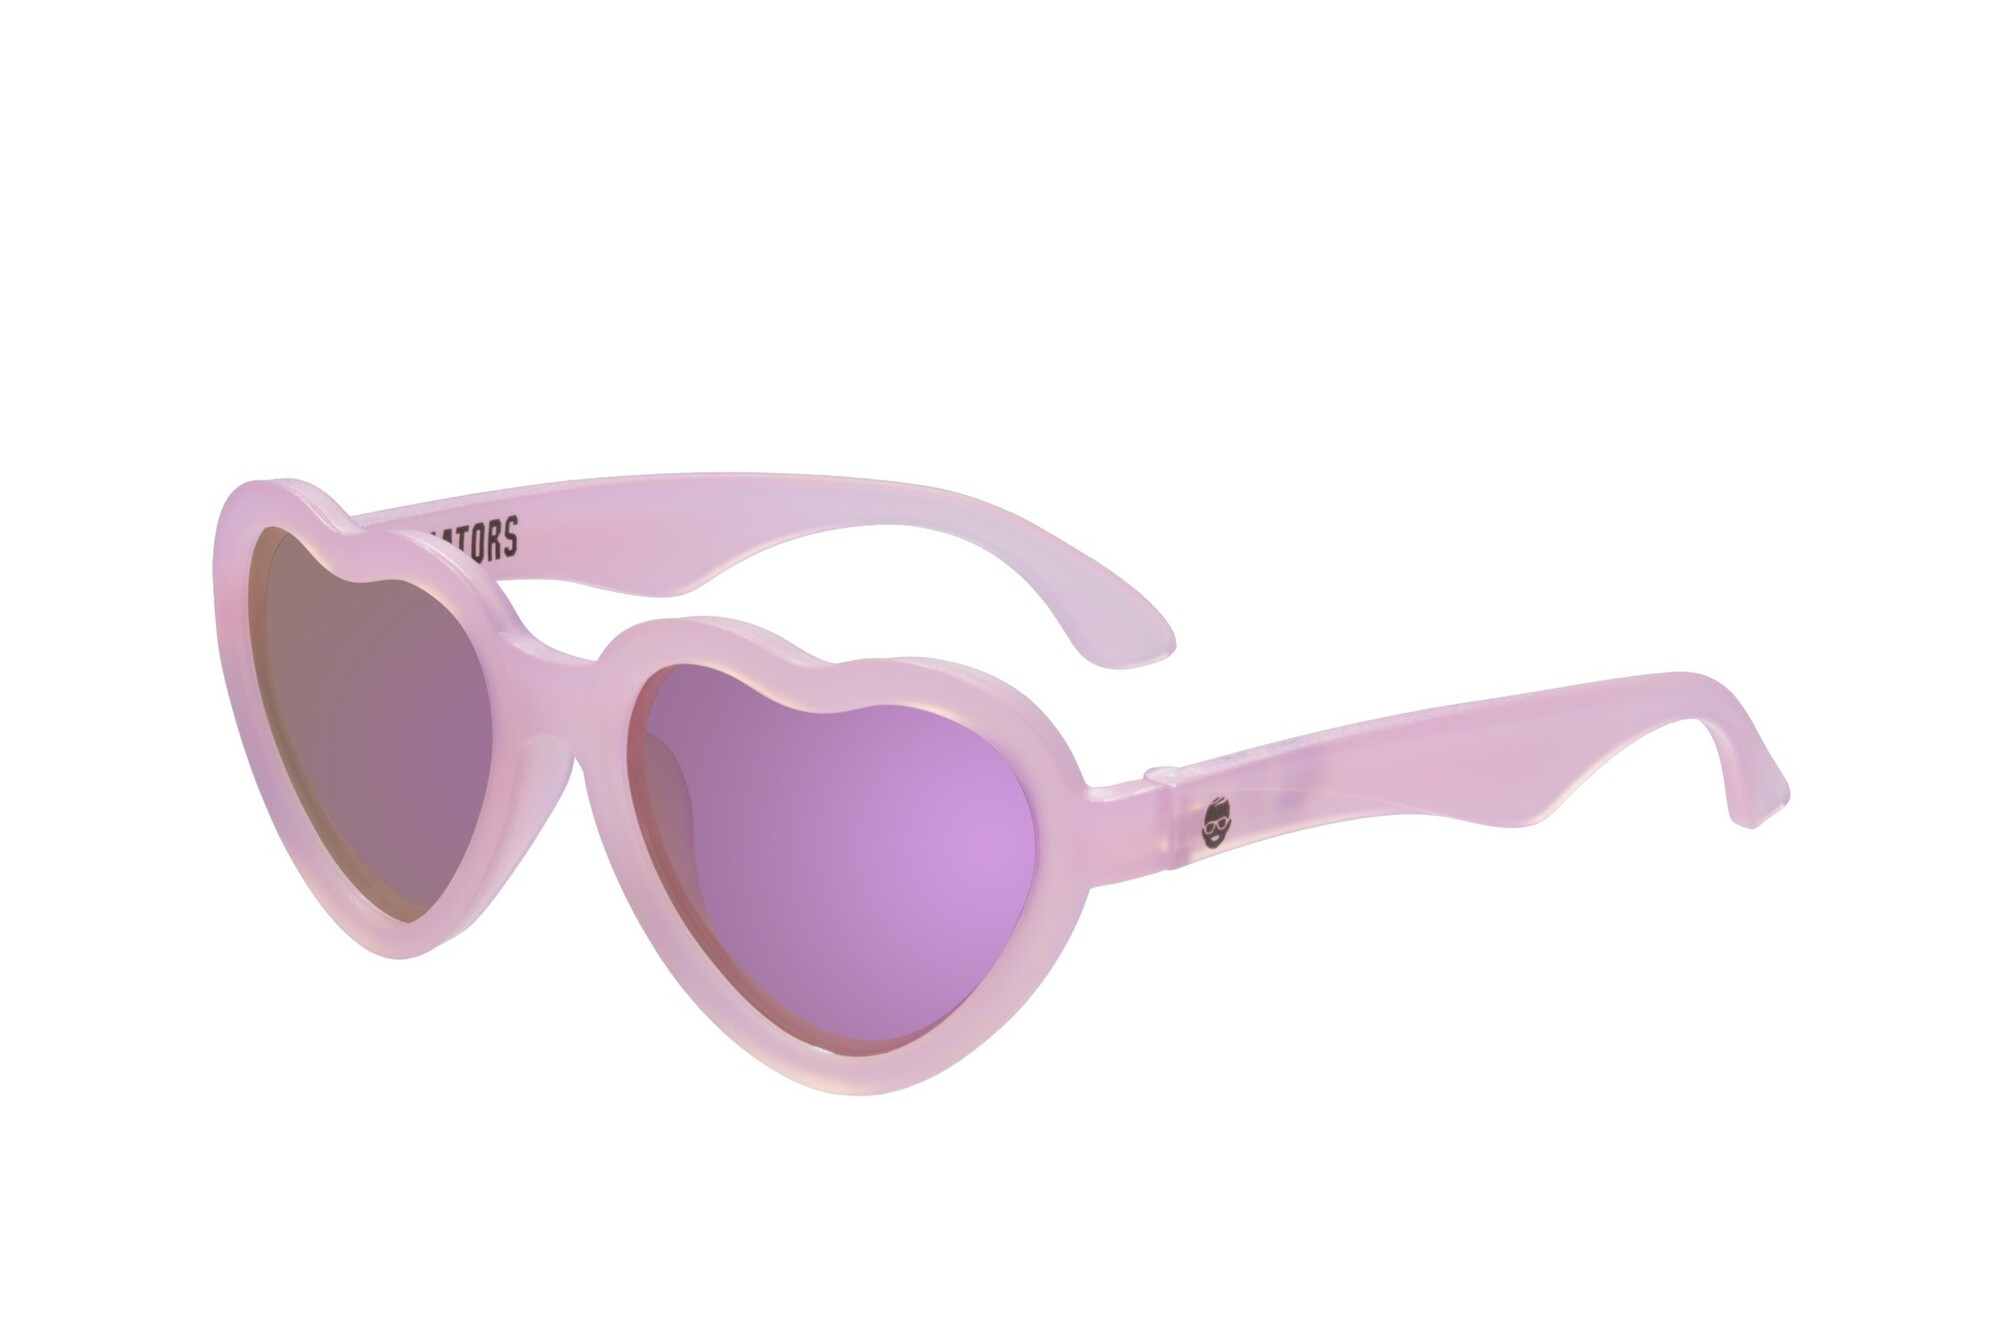 Babiators - gepolariseerde UV-zonnebril voor meisjes - The Influencer - Roze